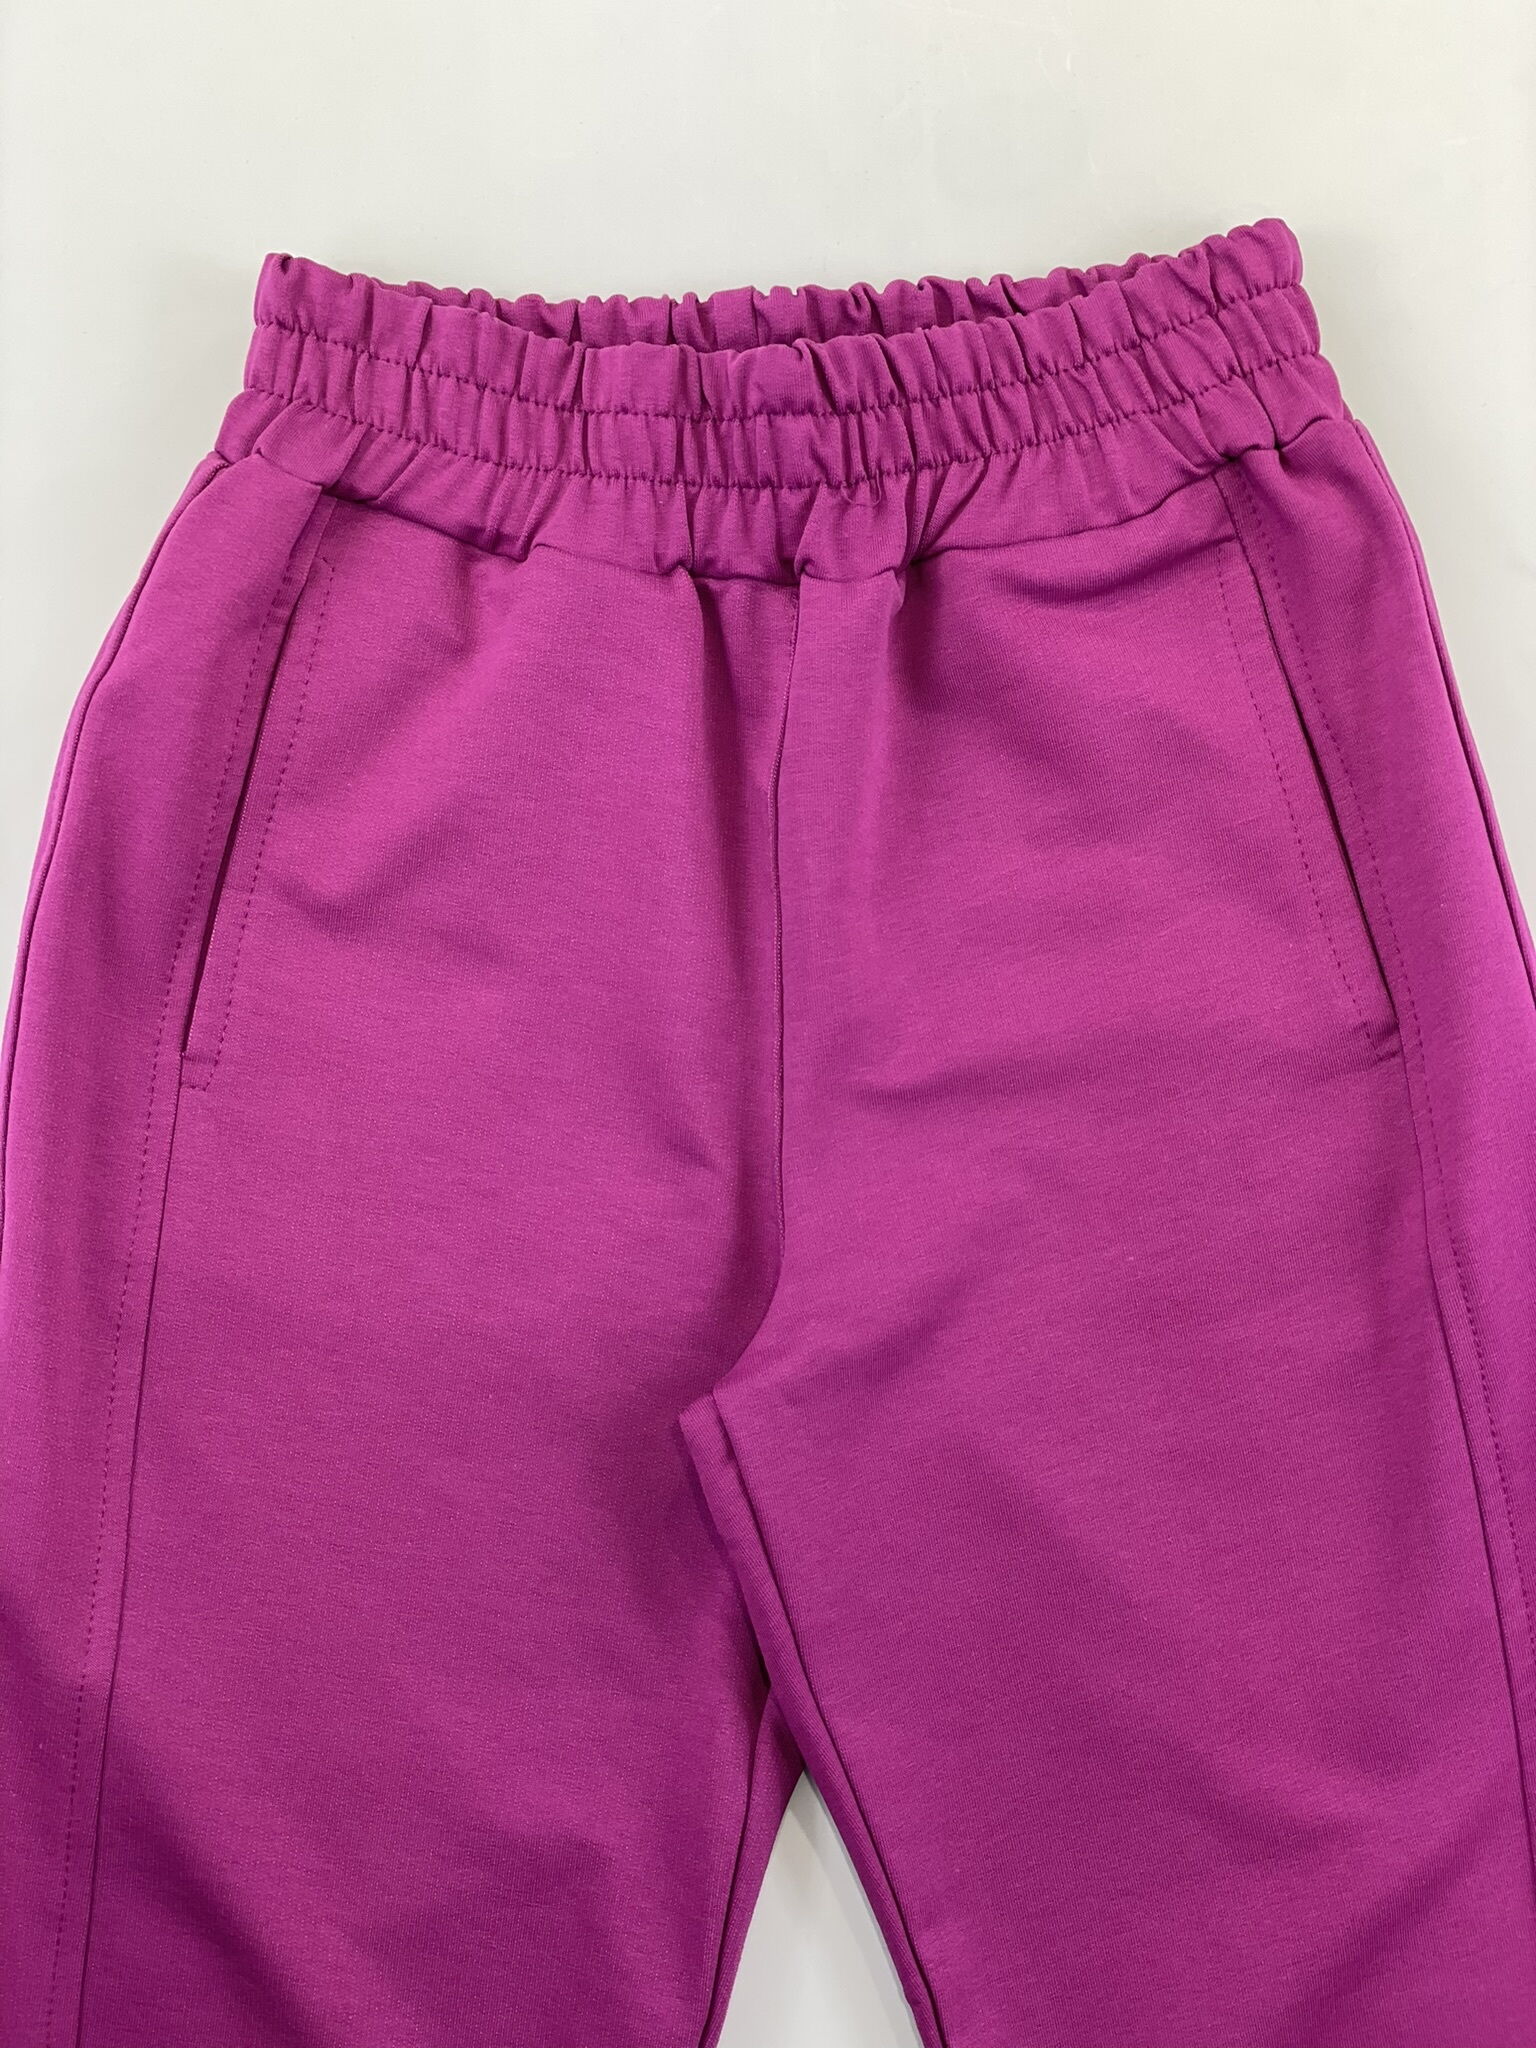 Спортивный костюм для девочки фиолетовый 1207 - картинка